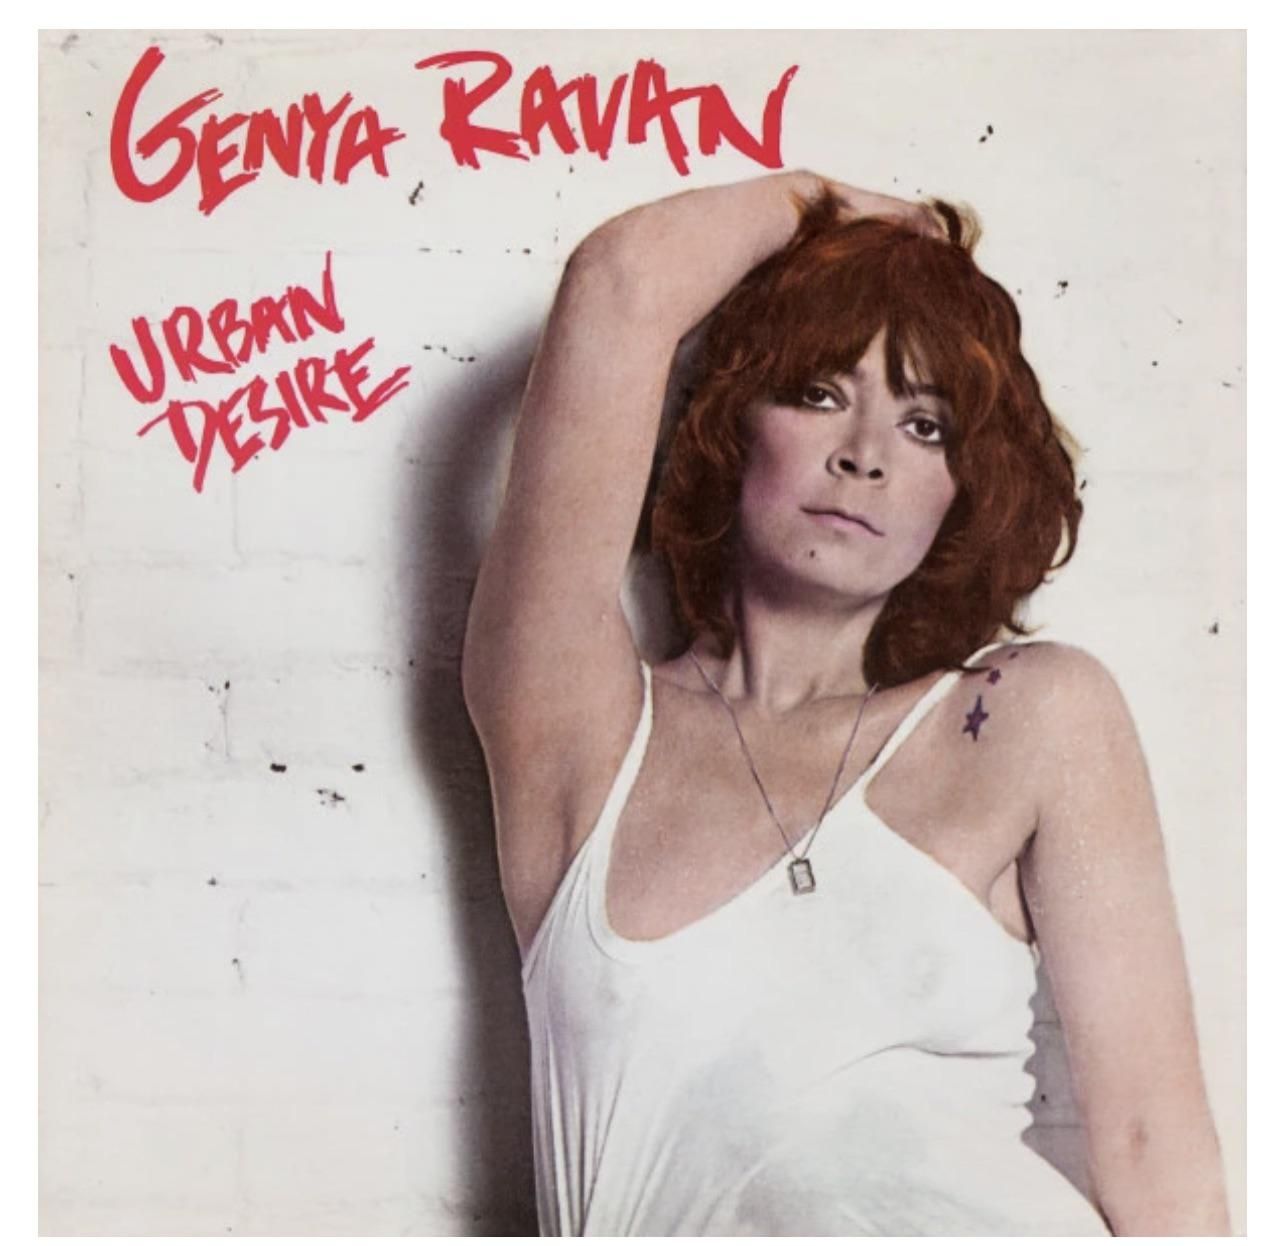 Genya Ravan looks a LOT like Jimmy Fallon in a wig. Album released in 1978.